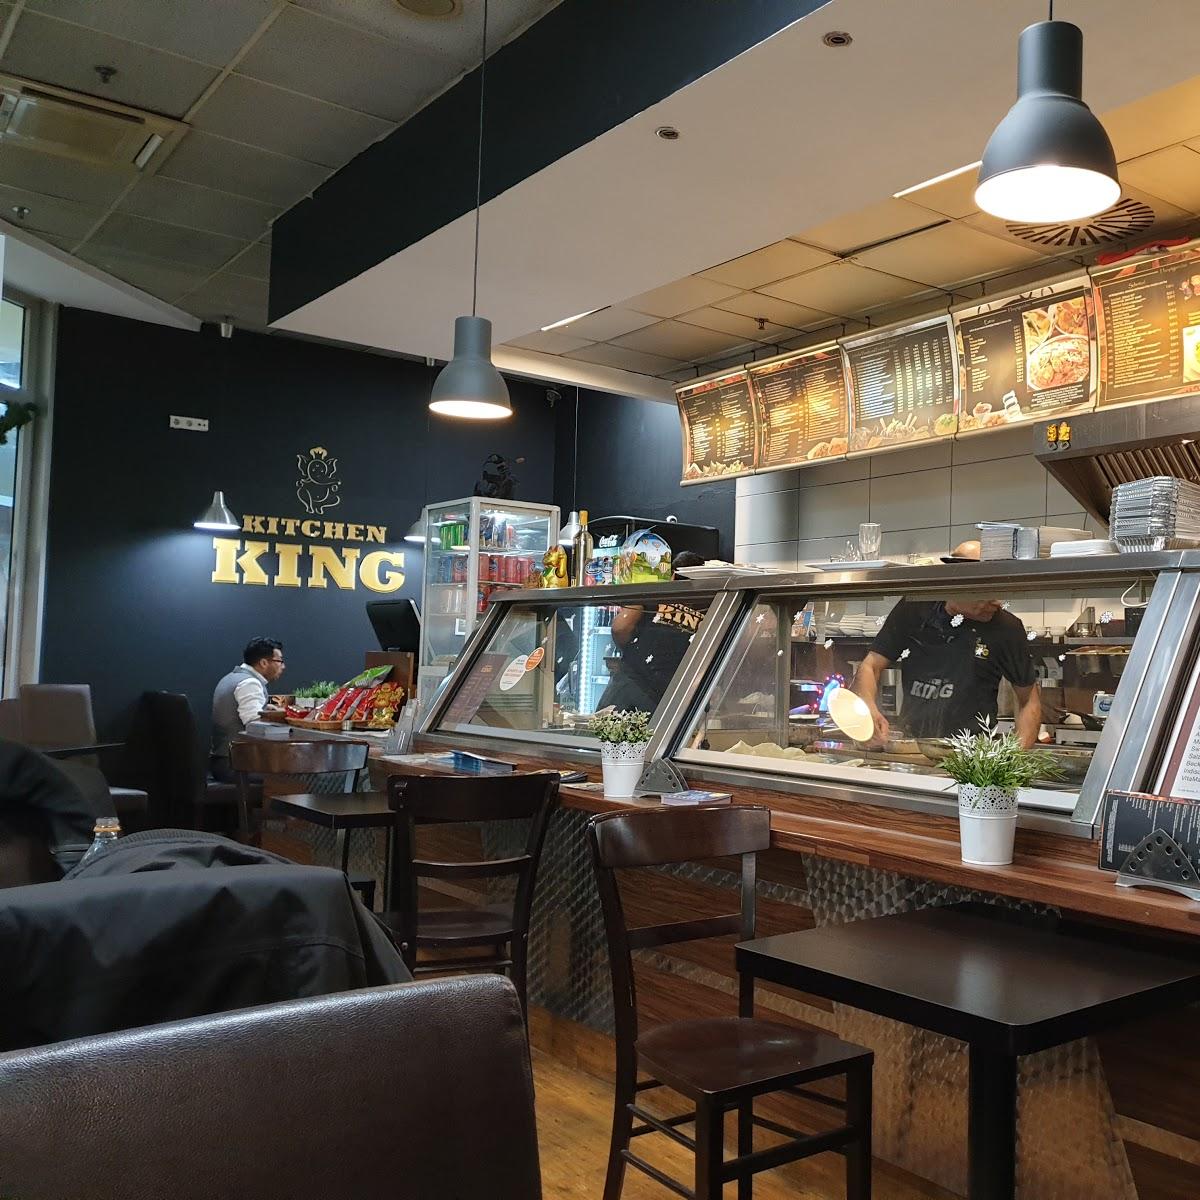 Restaurant "Indisches Restaurant Kitchen King" in Bremerhaven